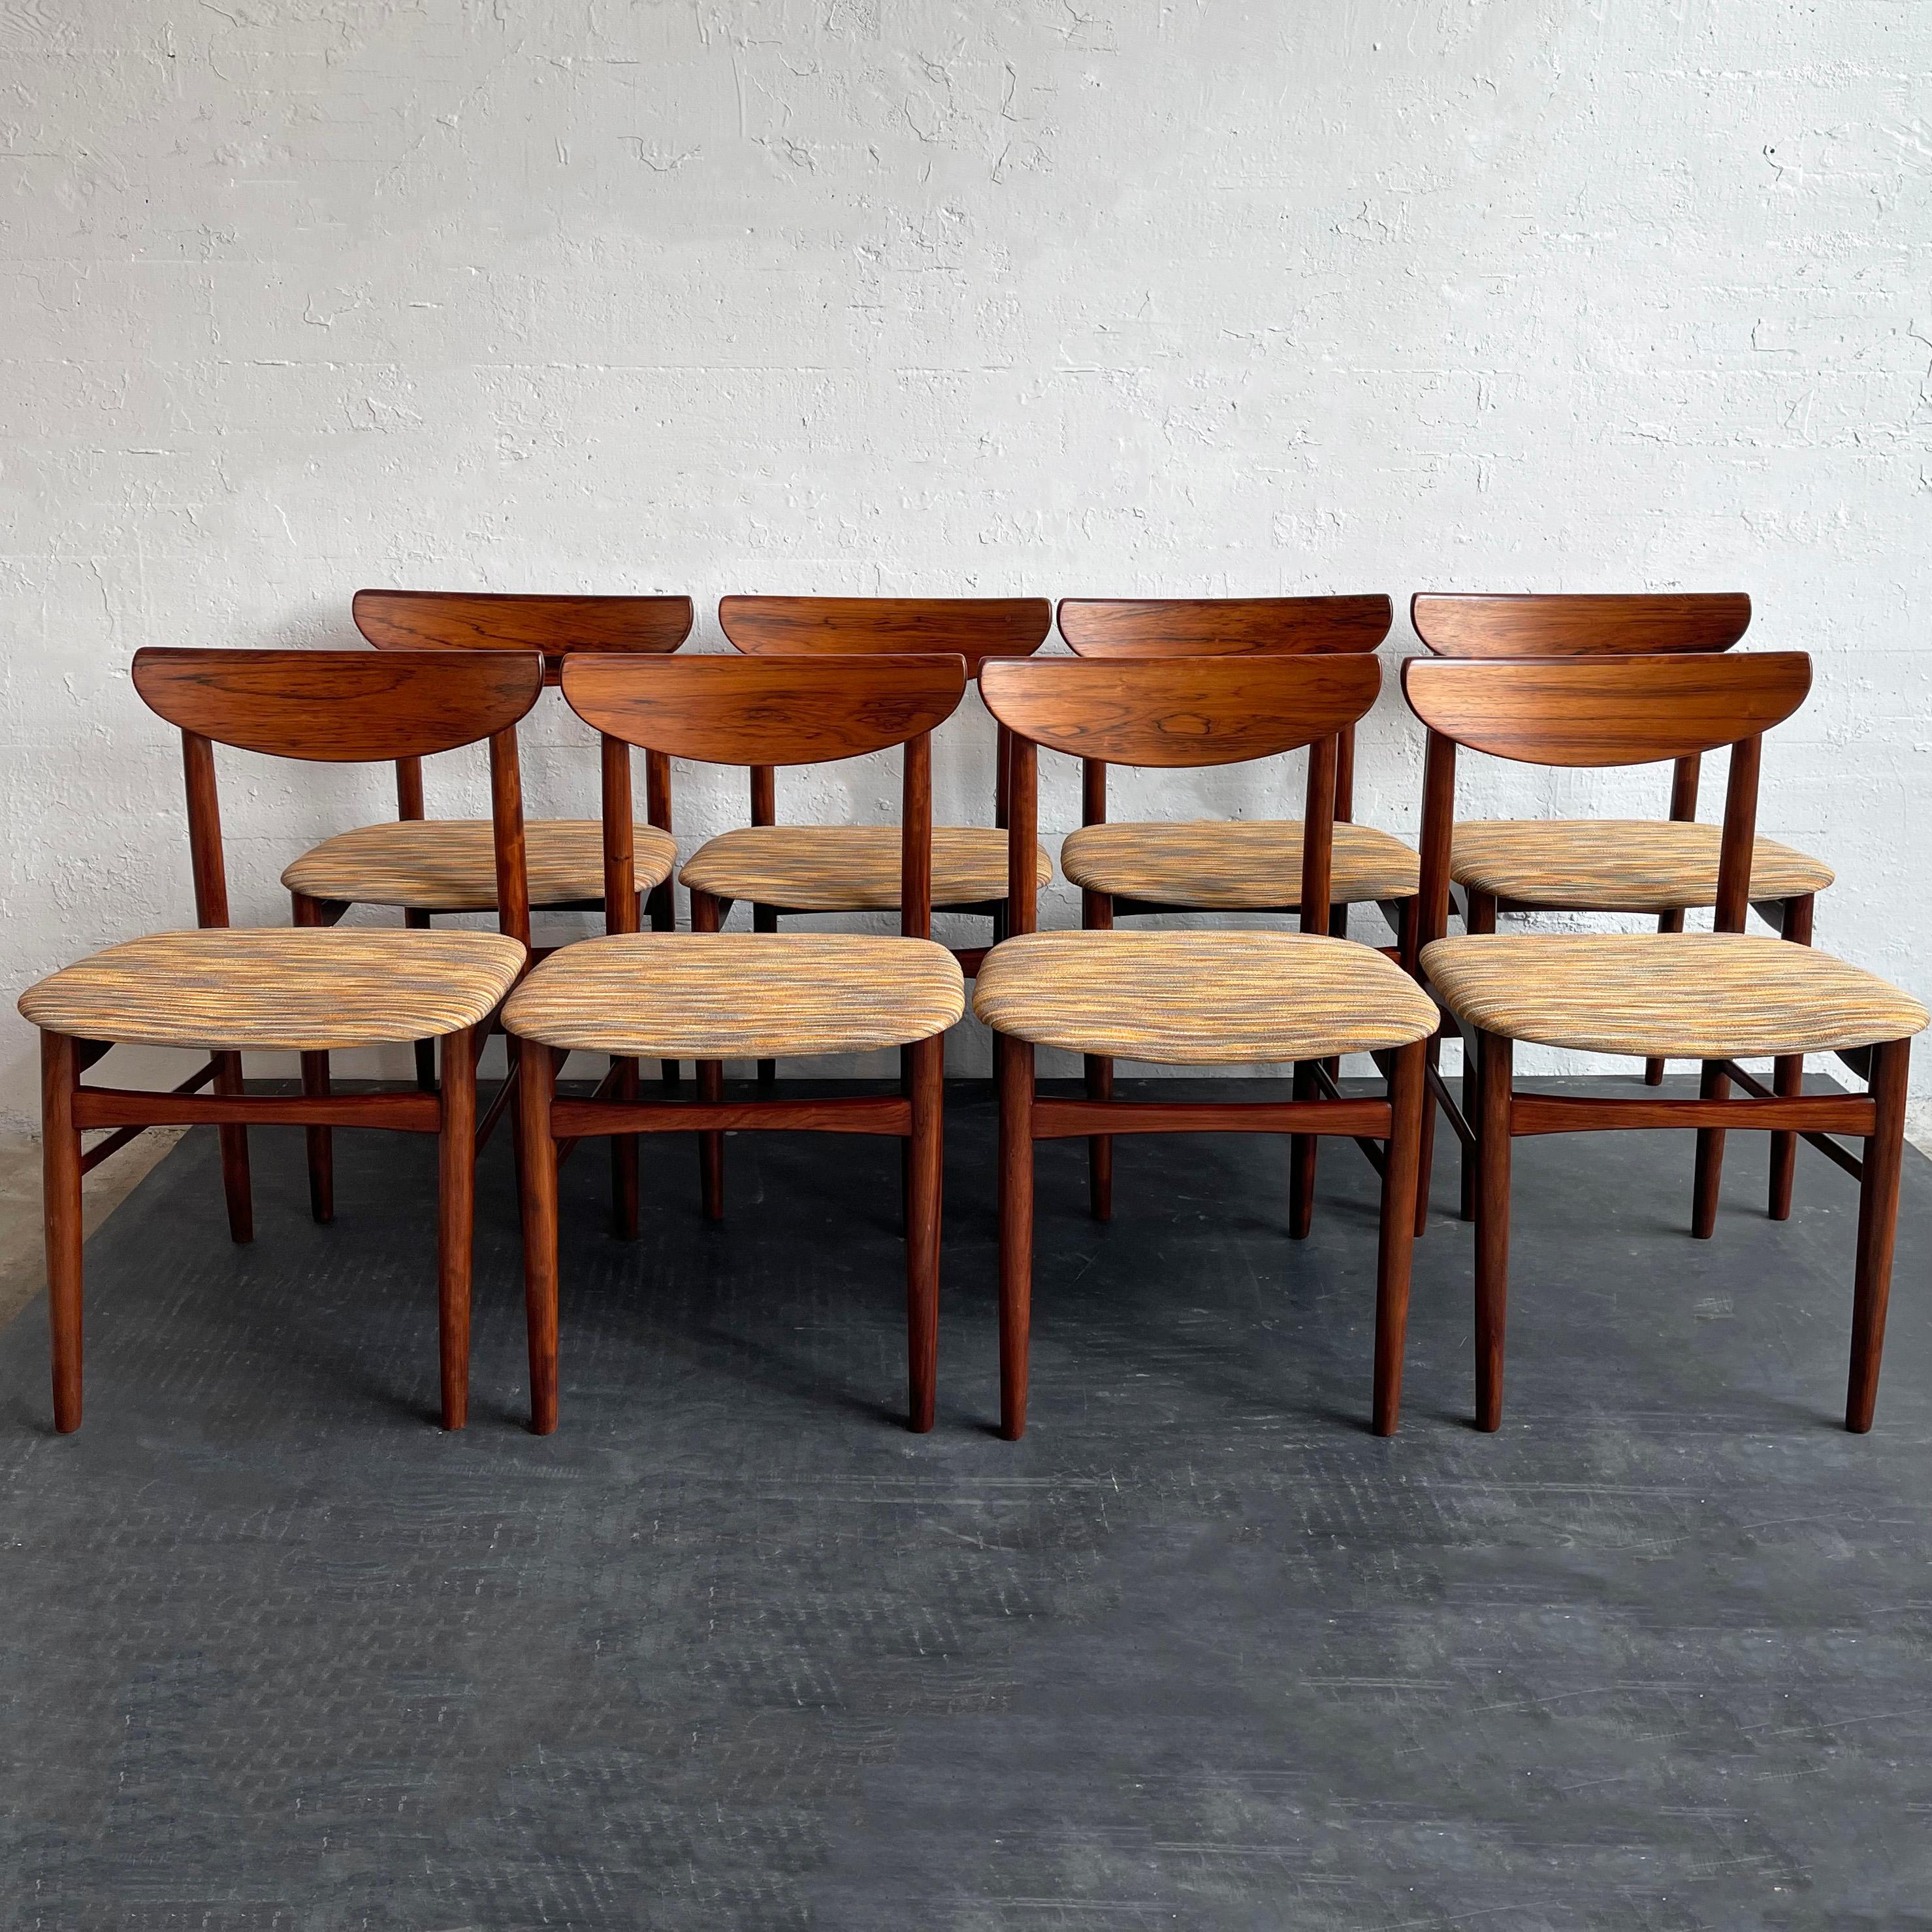 Ensemble de 8 chaises de salle à manger danoises modernes conçues par Kurt Østervig pour K.P. Møbler, 1959, Danemark. Ces chaises élégantes sont dotées d'un cadre en palissandre brésilien magnifiquement grainé, d'un dossier sculpté et d'une assise